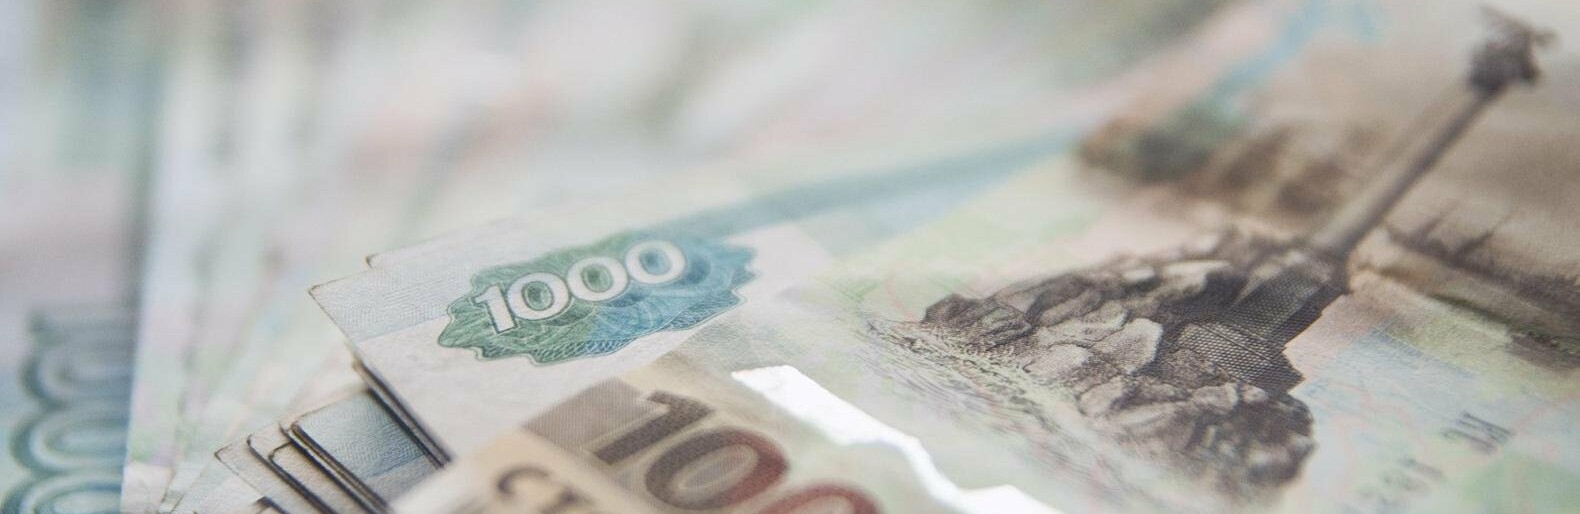 За попытку сбыть поддельные доллары белгородский суд приговорил мужчину к 1,5 годам тюрьмы